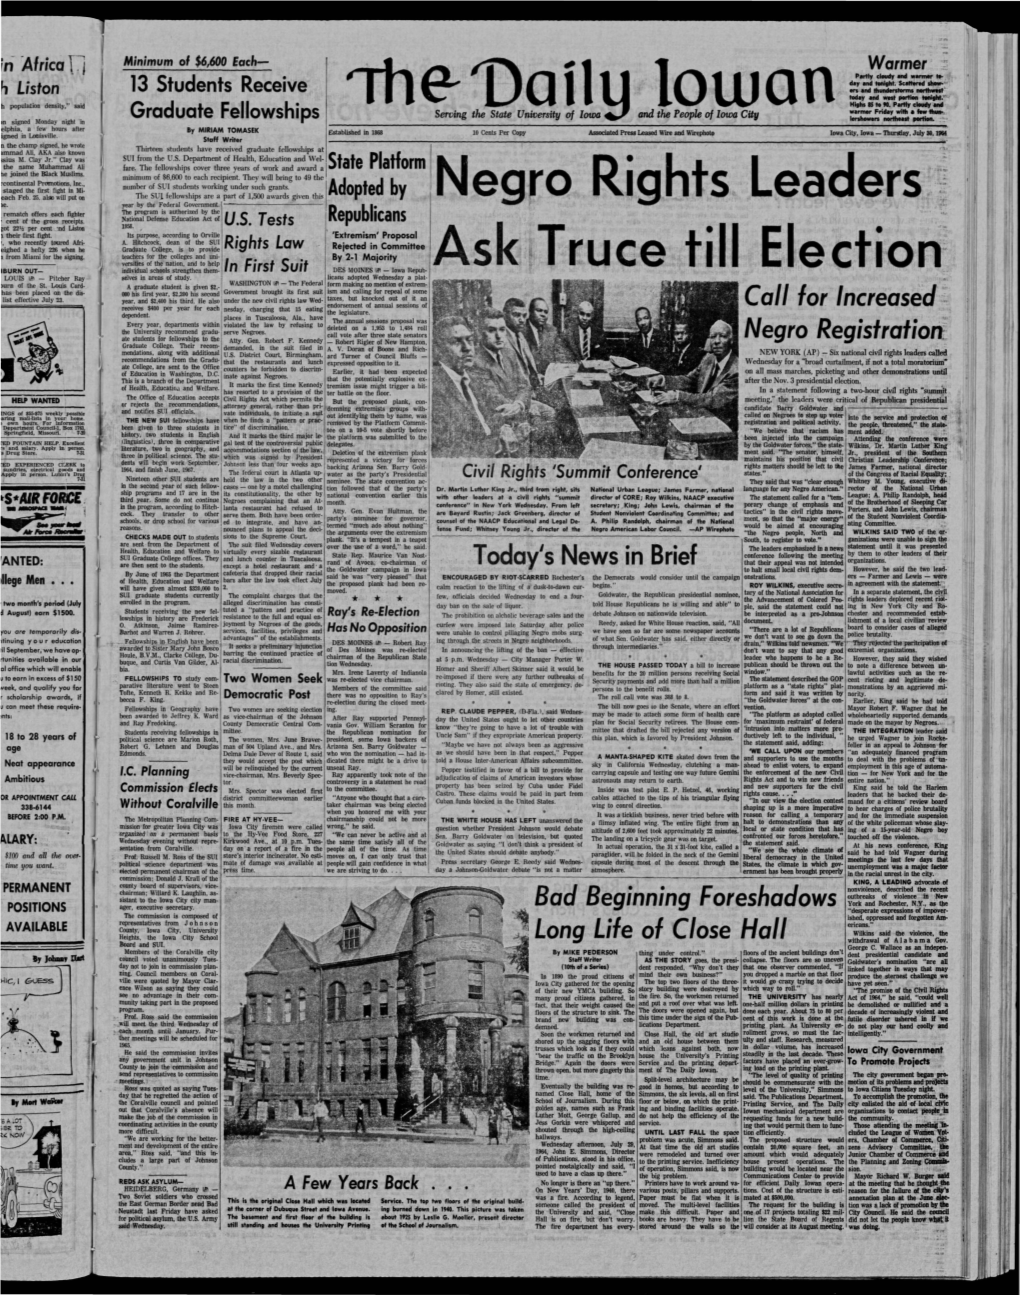 Daily Iowan (Iowa City, Iowa), 1964-07-30